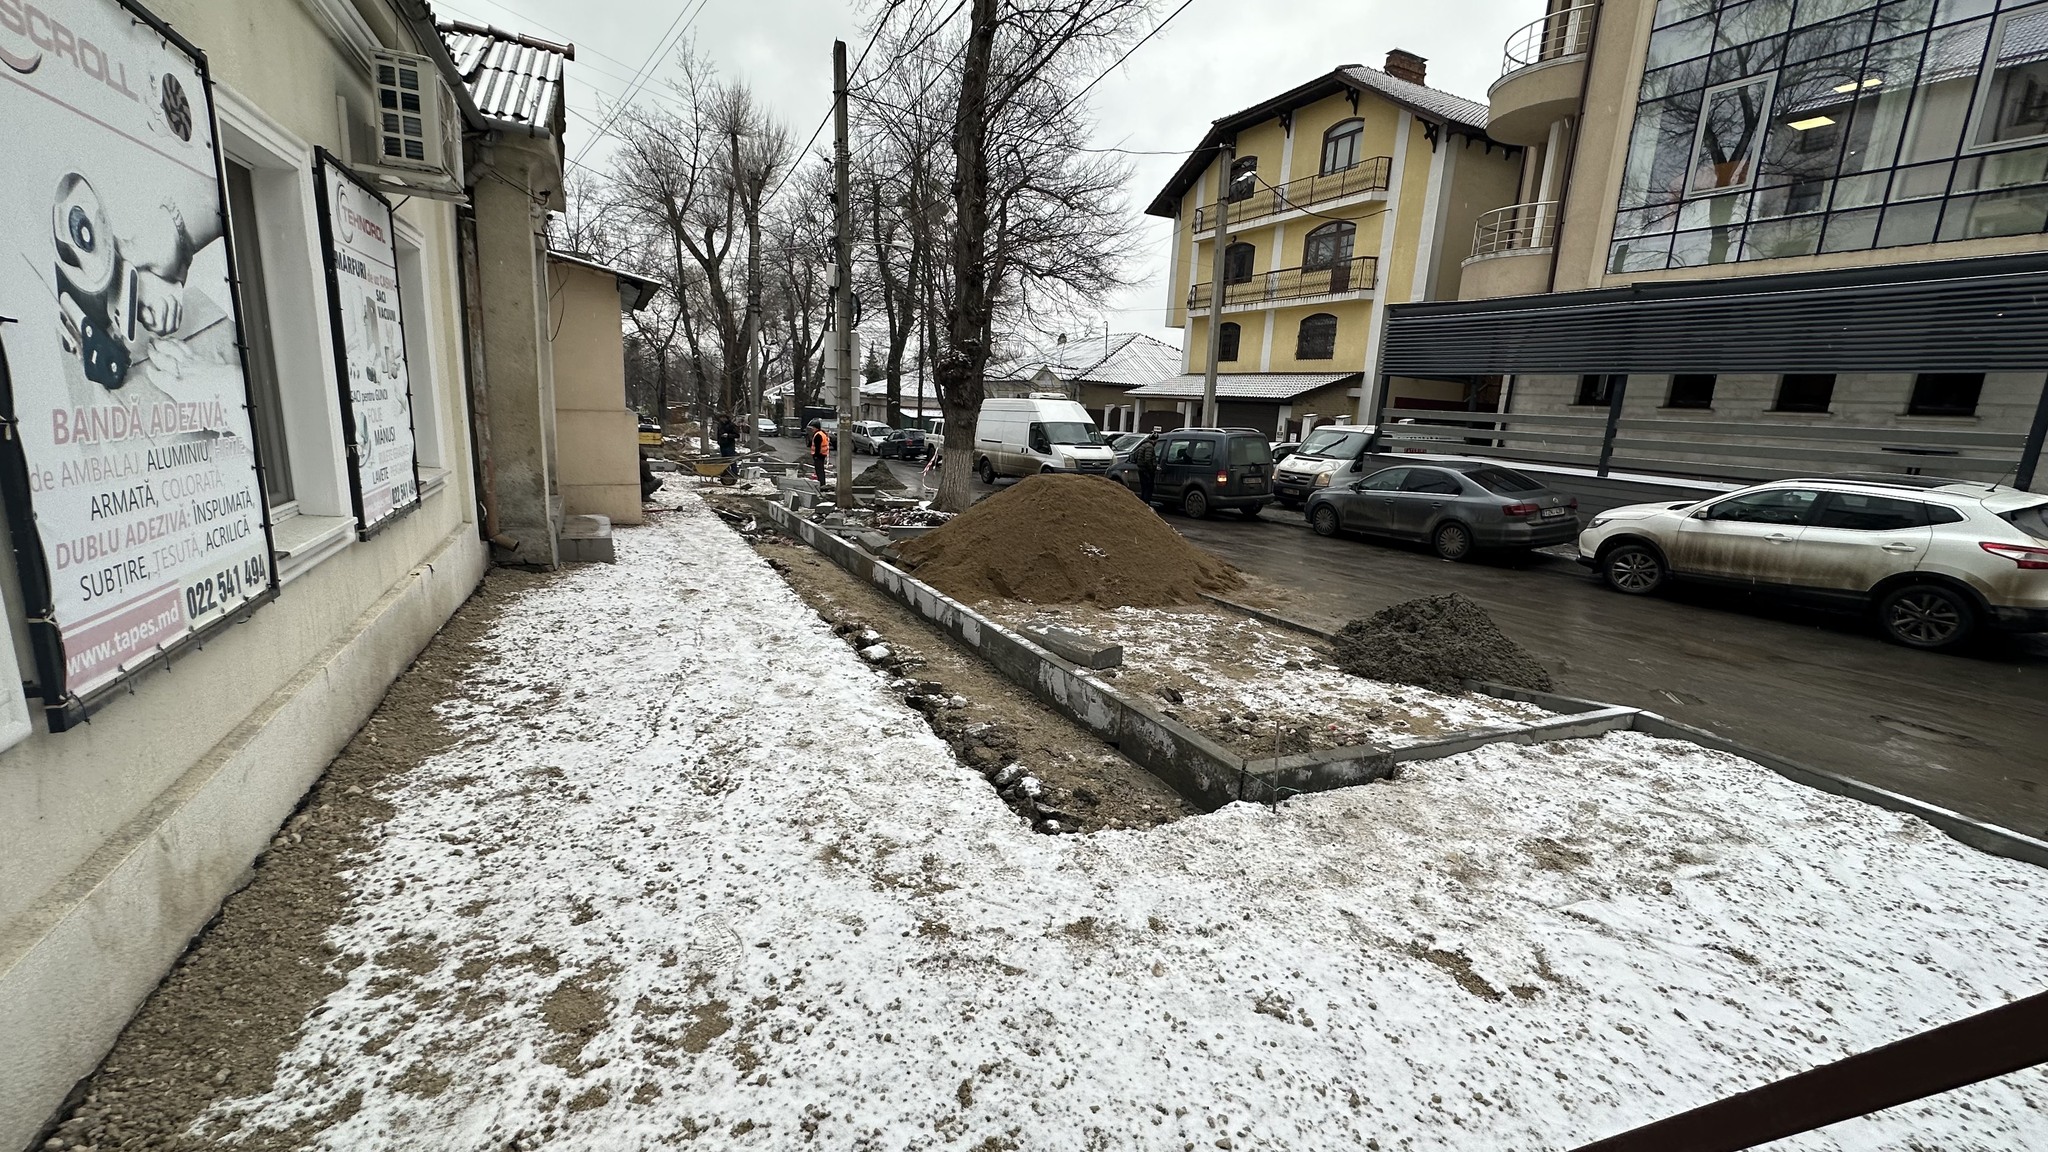 Мэрии Кишинева грозит уголовное дело. Парковку на тротуарах в историческом центре обустраивают без документов